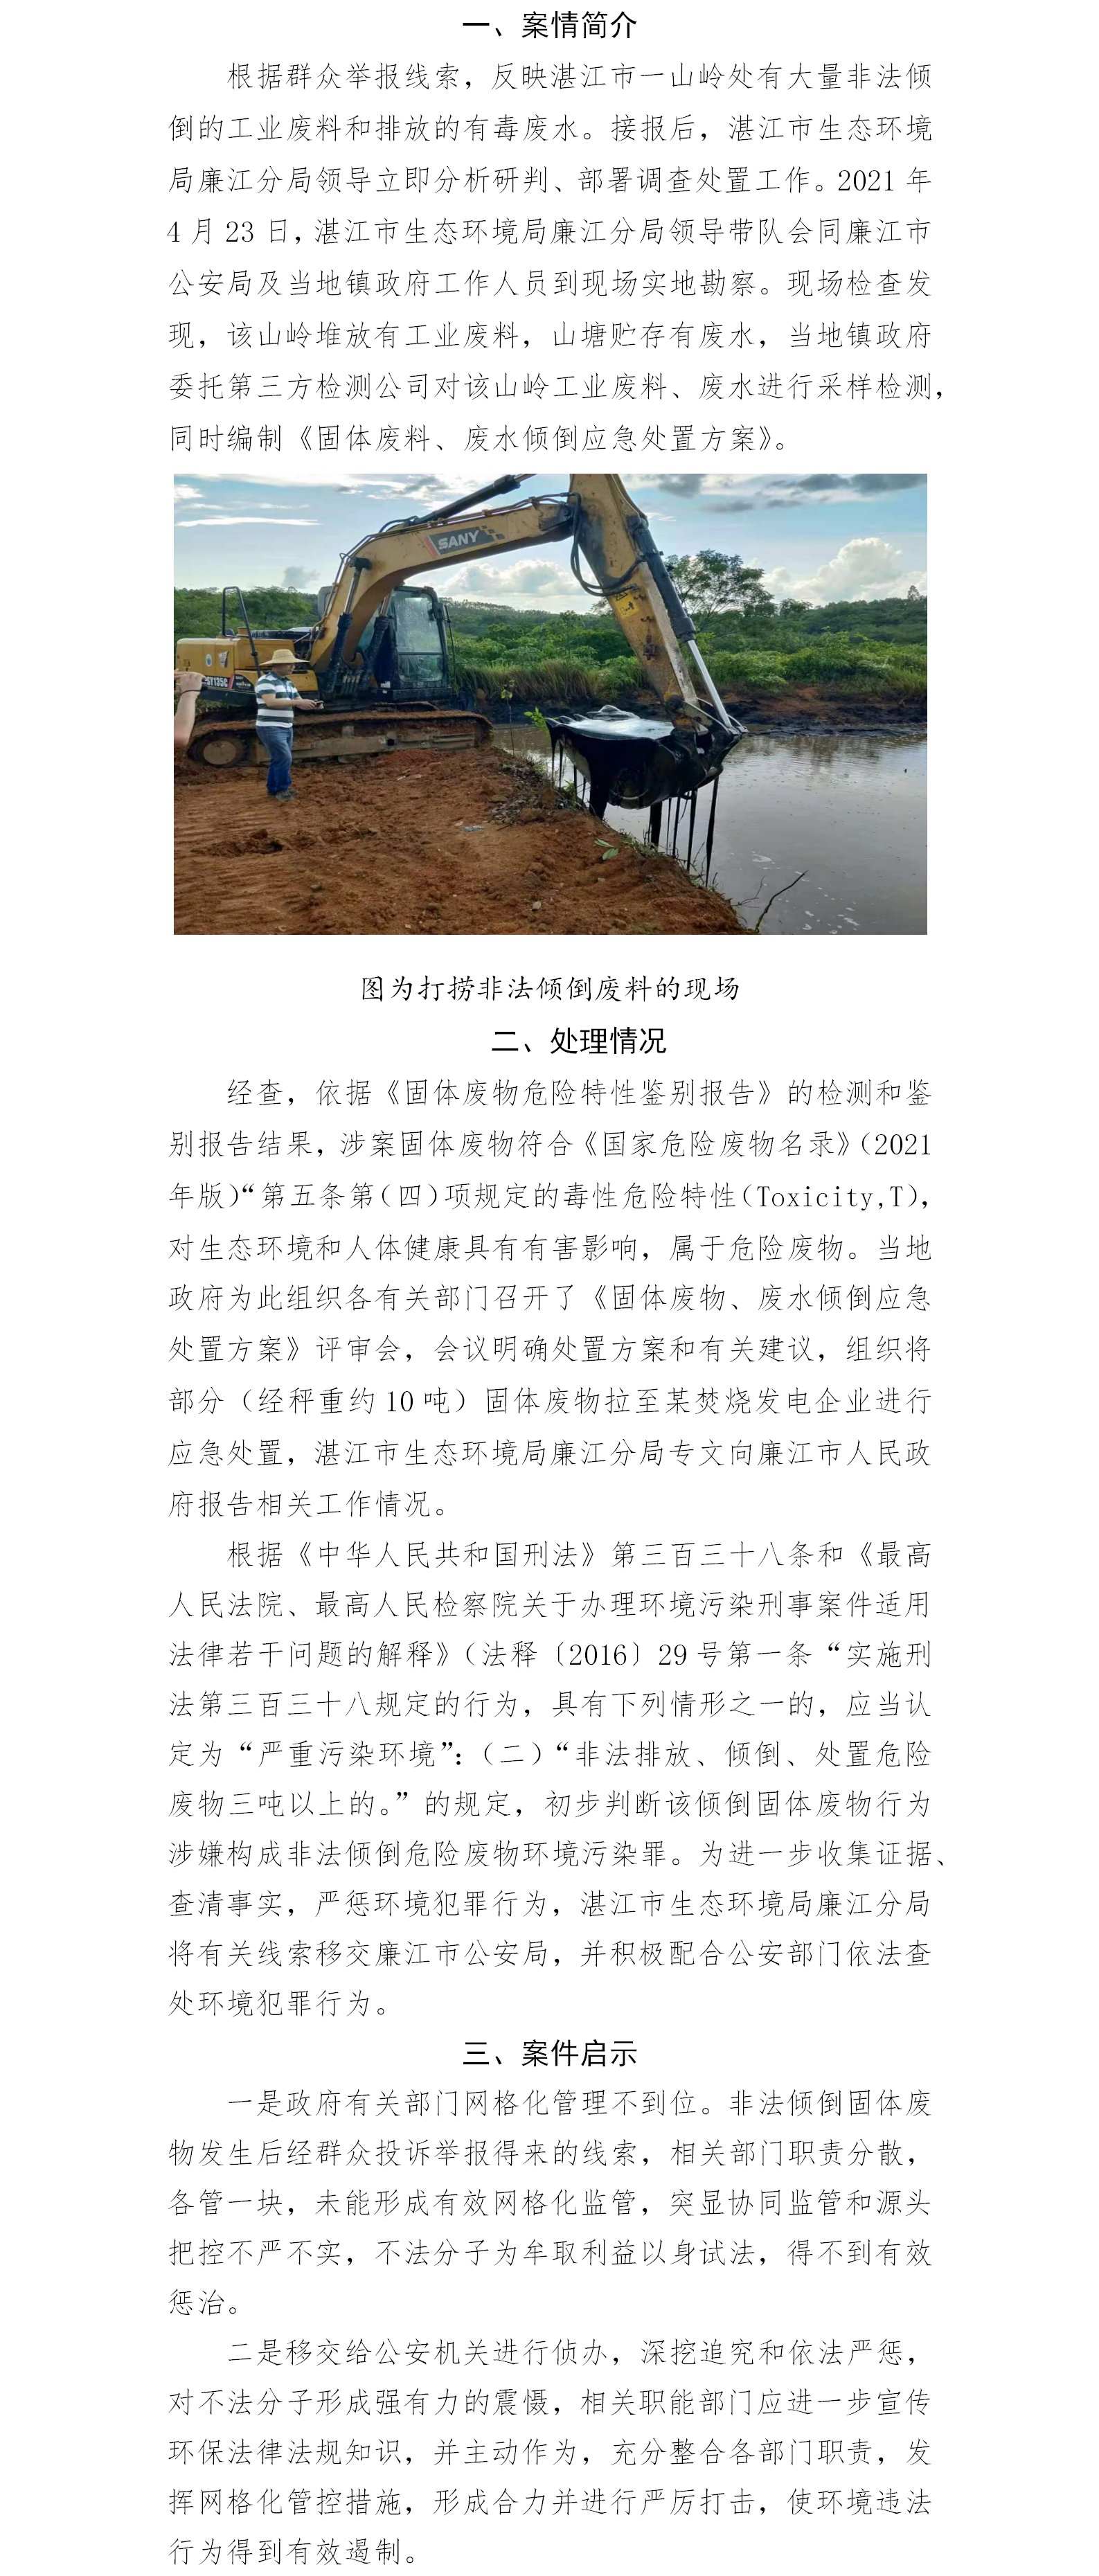 湛江市多部门协同处置一起非法倾倒工业废料和排放有毒废水案.png